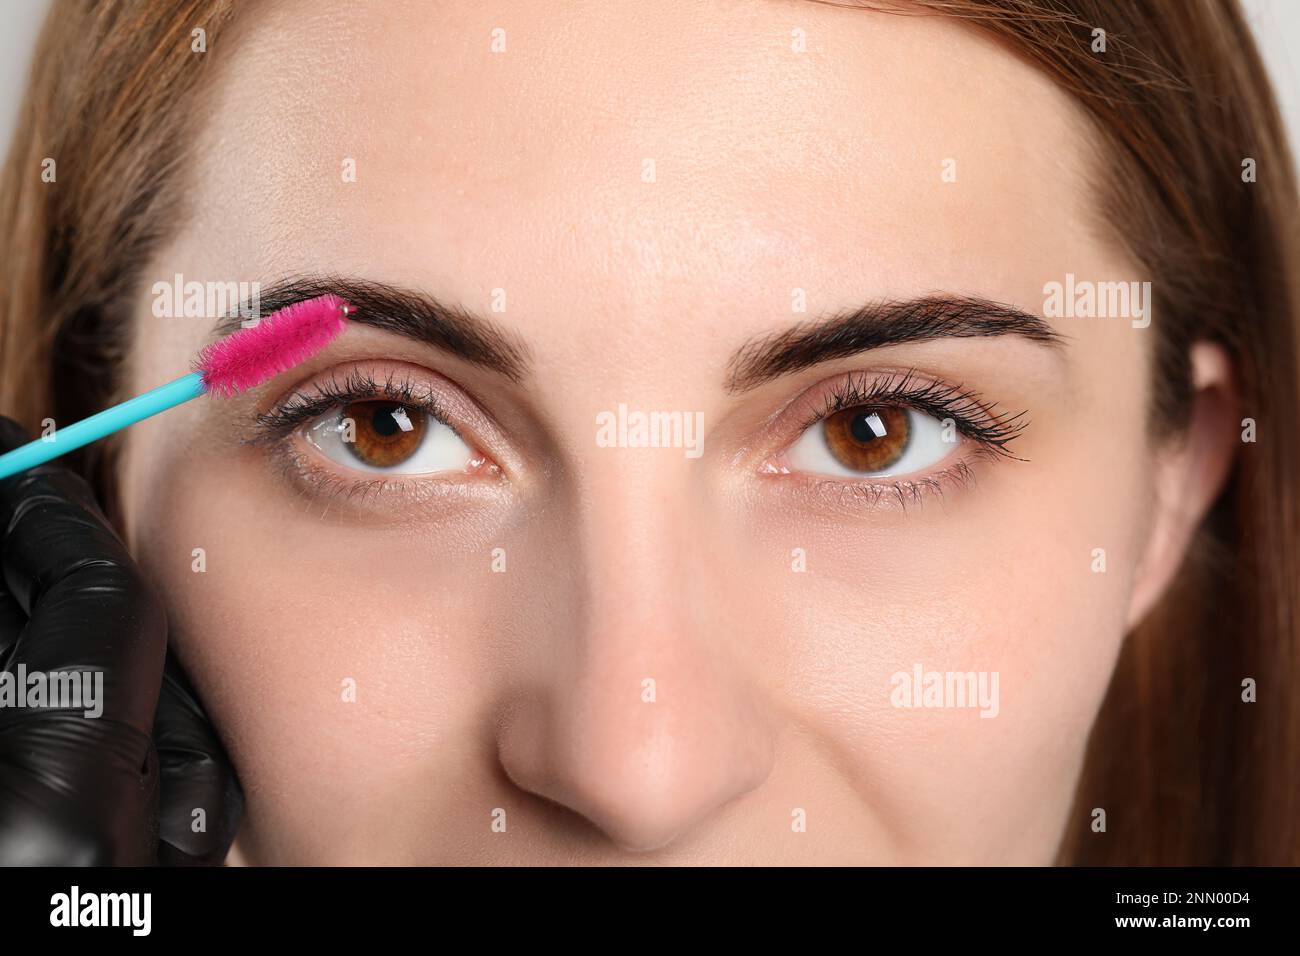 Kosmetikerin putzt die Augenbrauen der Frau nach dem Abfärben, Nahaufnahme Stockfoto